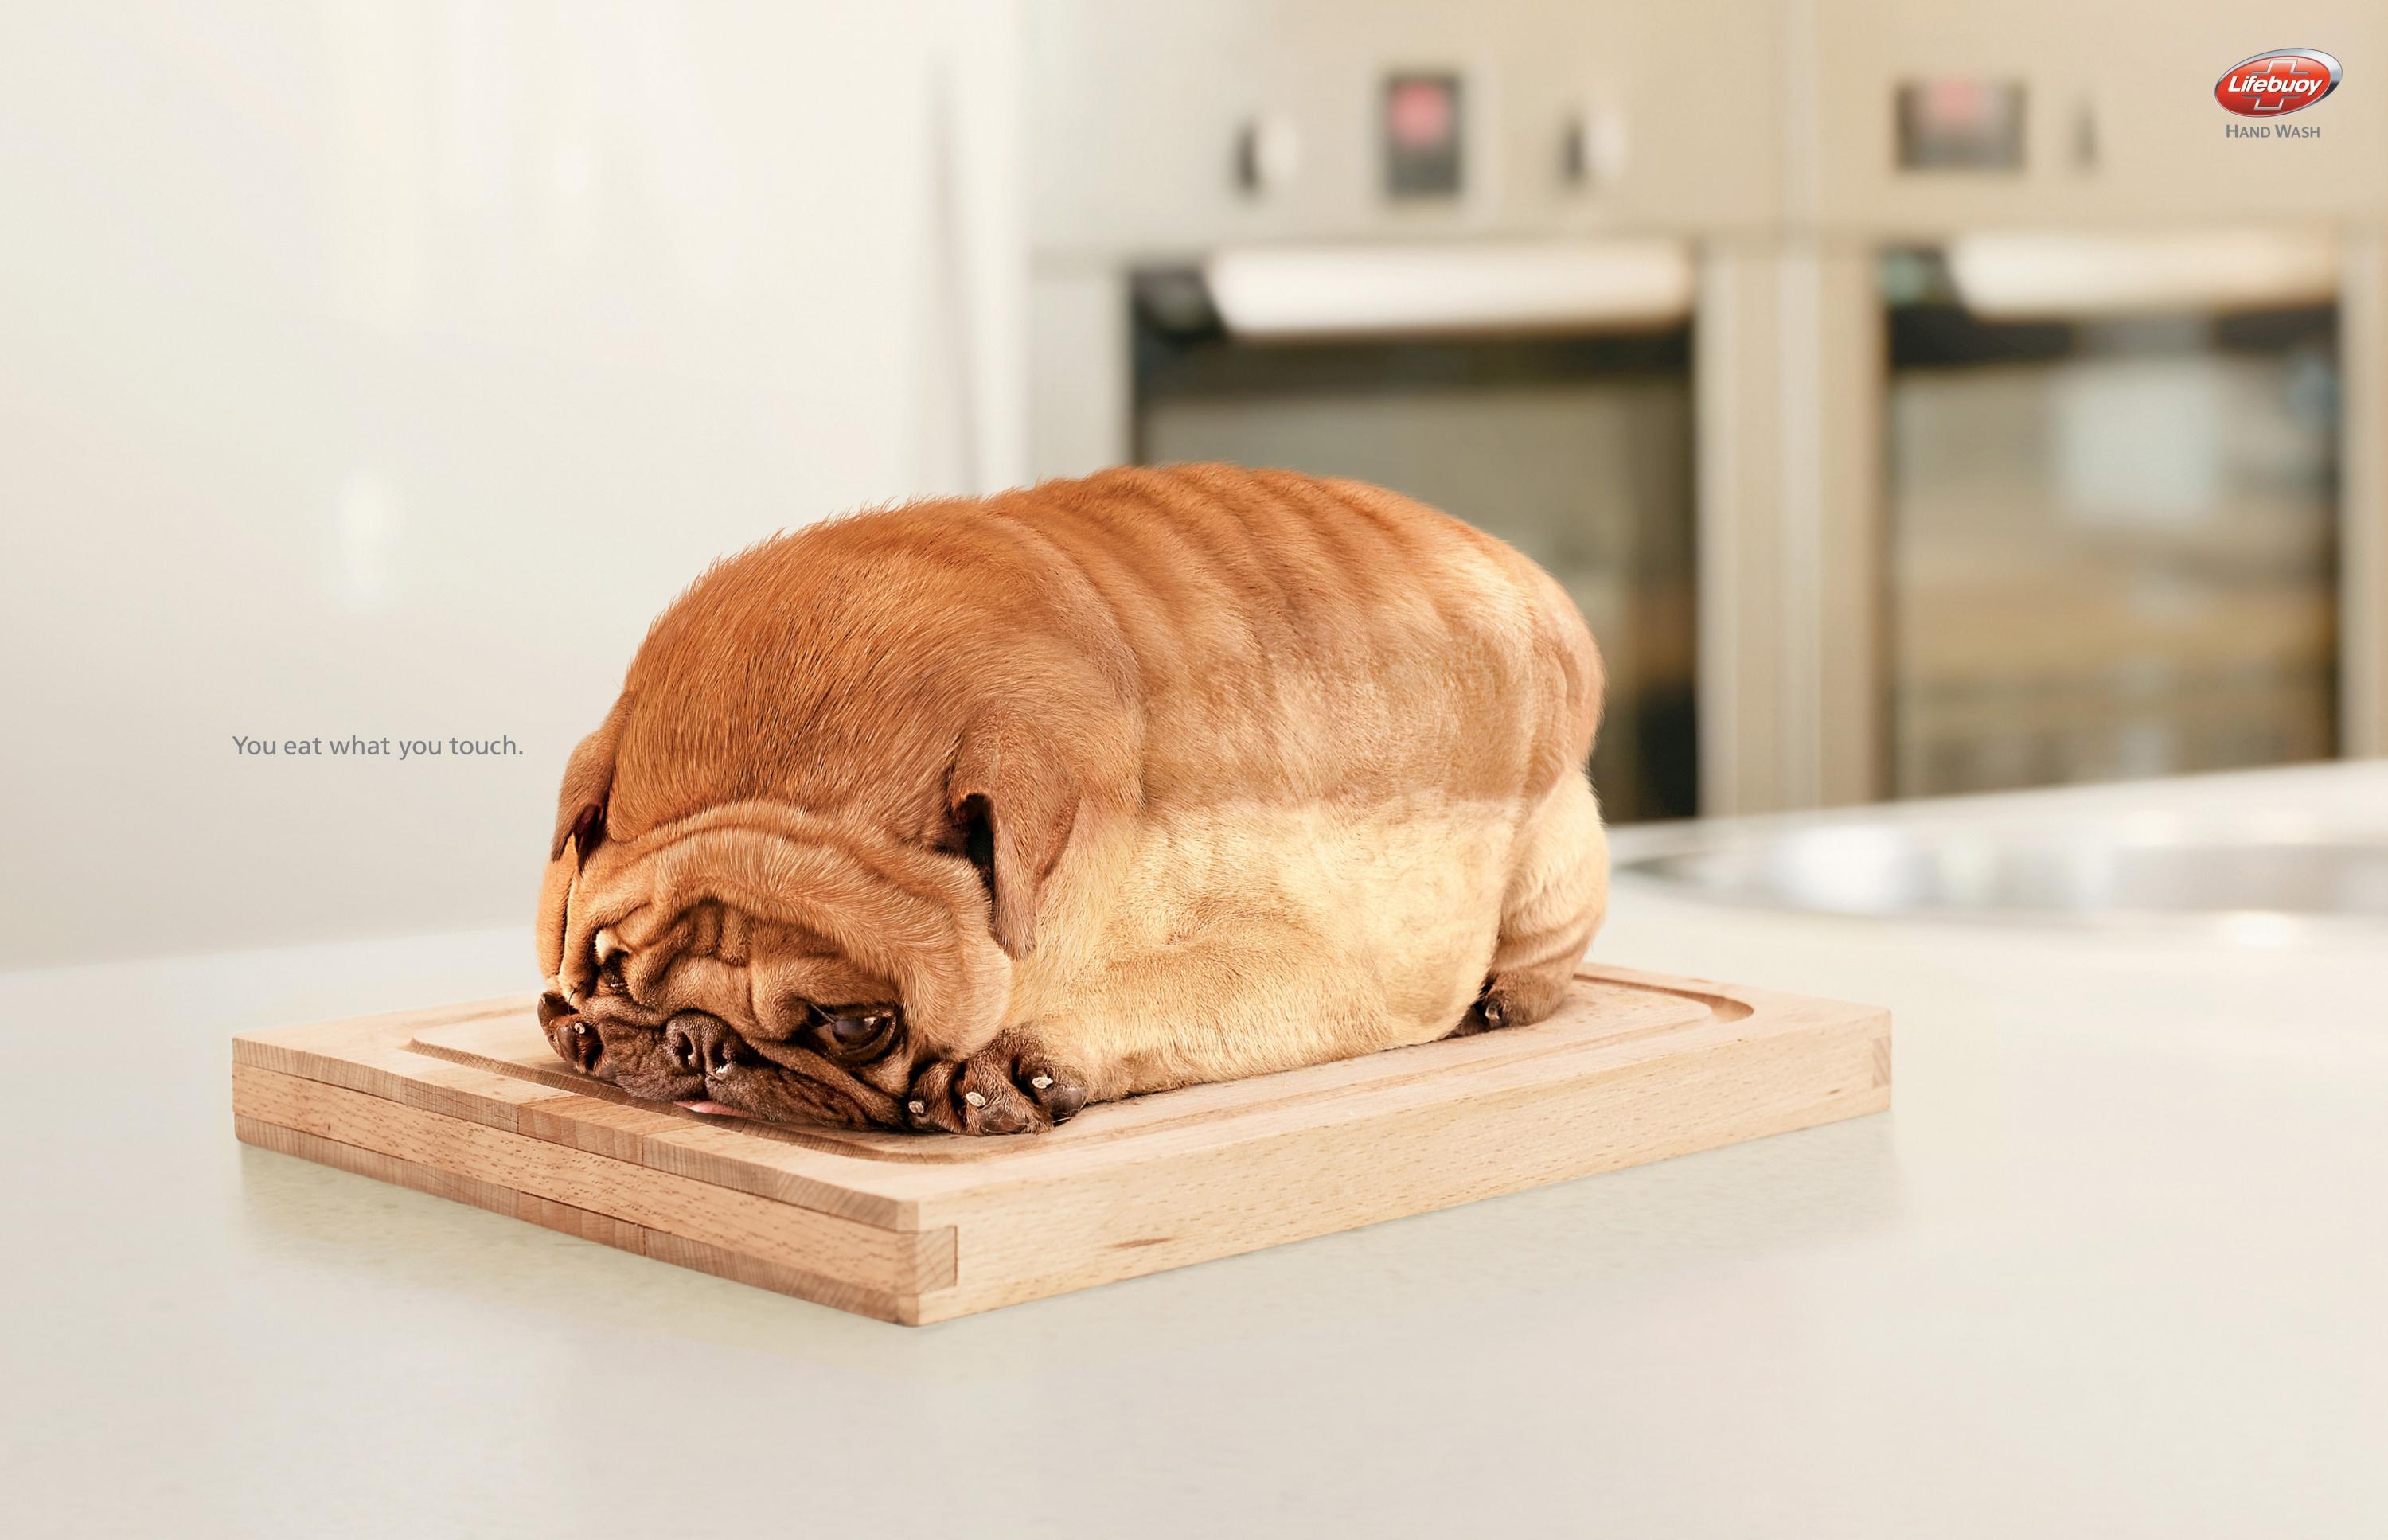 animals, dogs, bread - desktop wallpaper